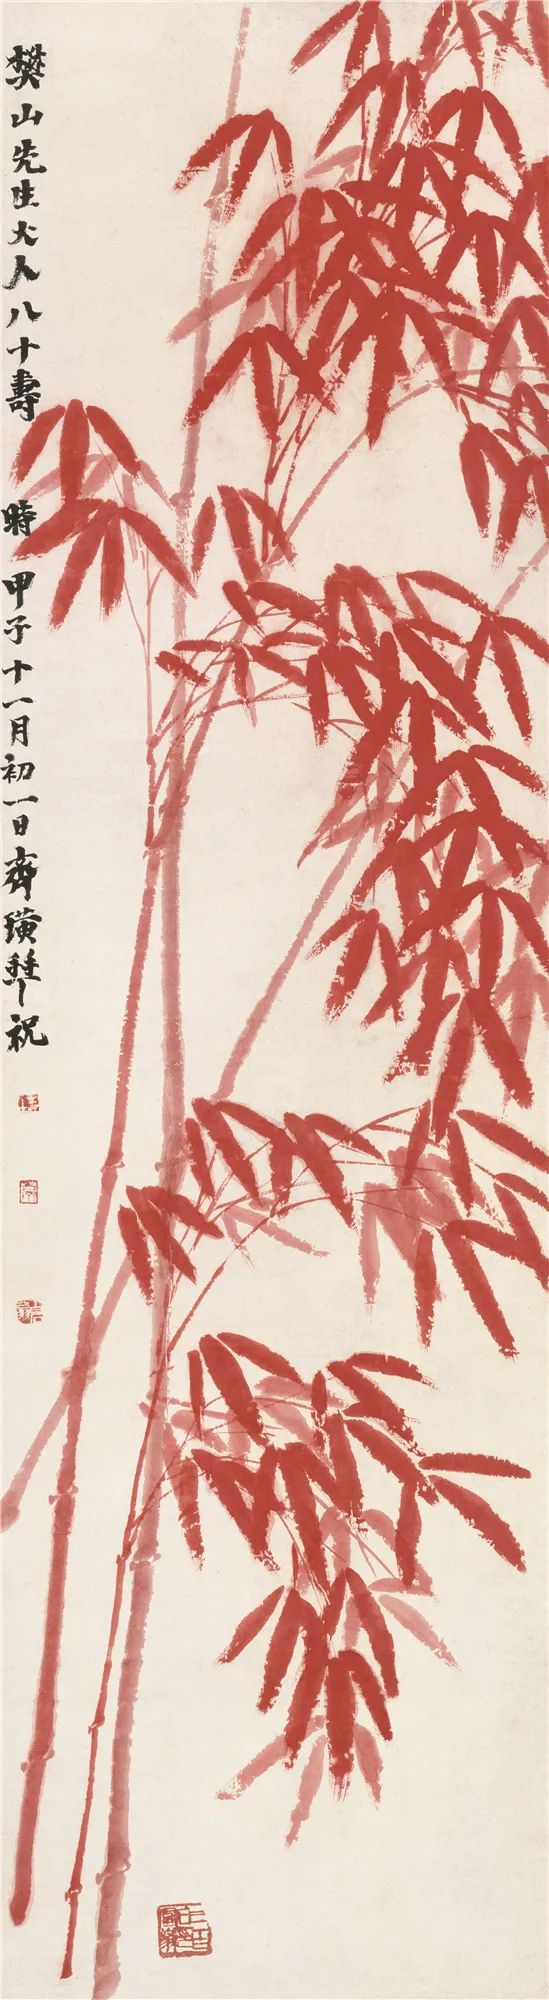 中国画里的一抹红看缶翁红桃与白石朱竹